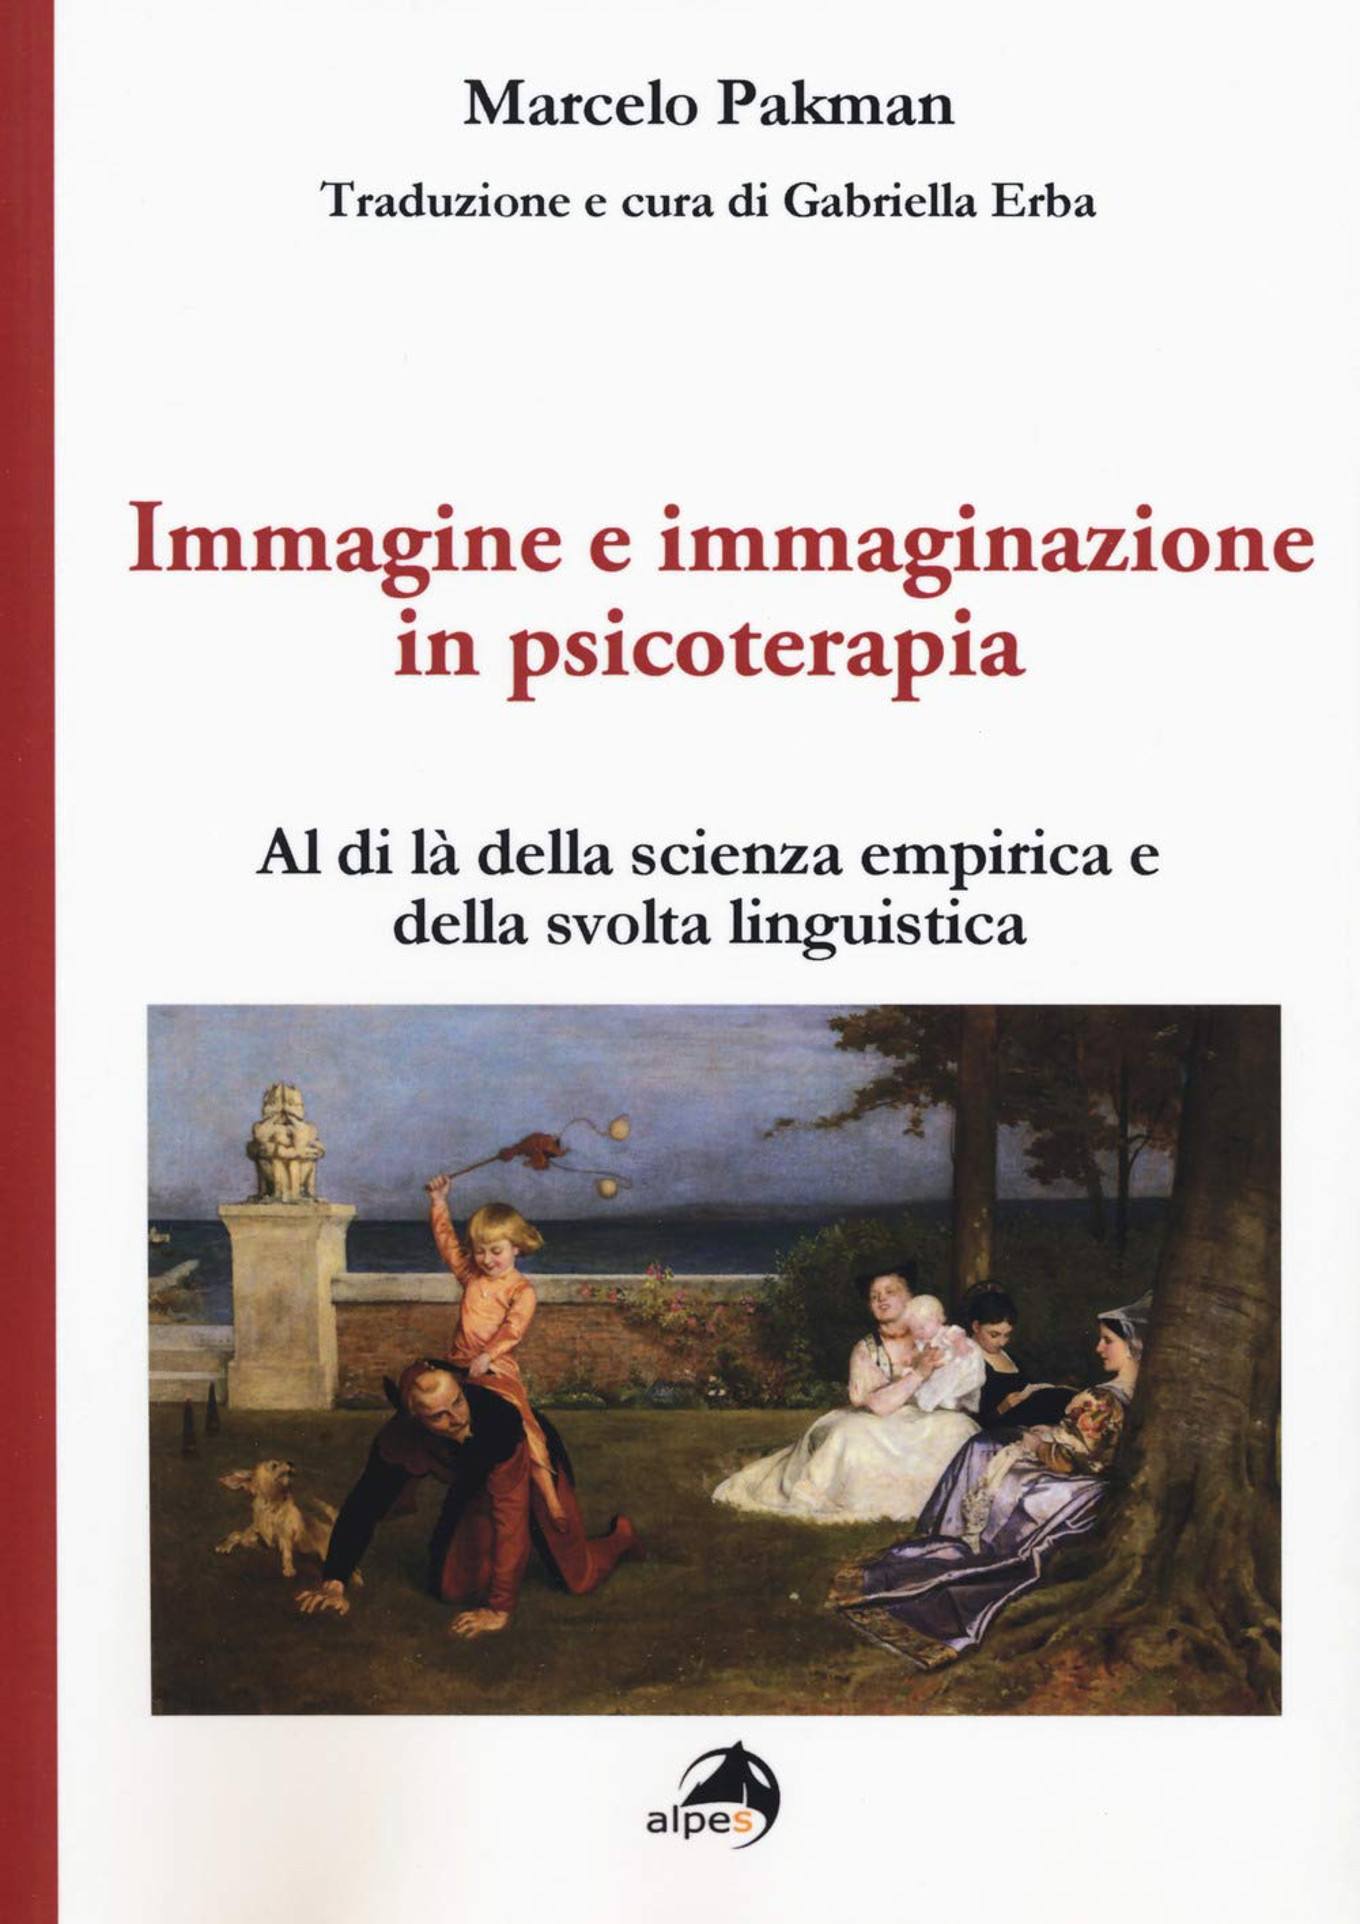 Immagine e immaginazione in psicoterapia (2018) - Recensione del libro FEAT